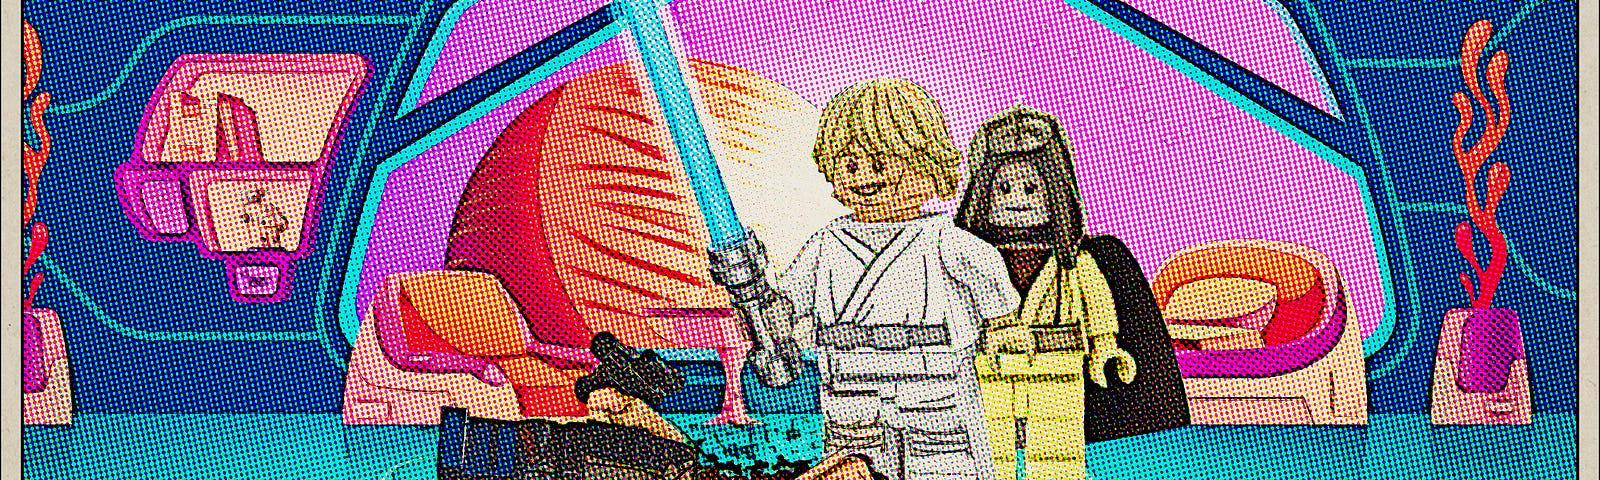 Luke Skywalker looks over dead Han Solo